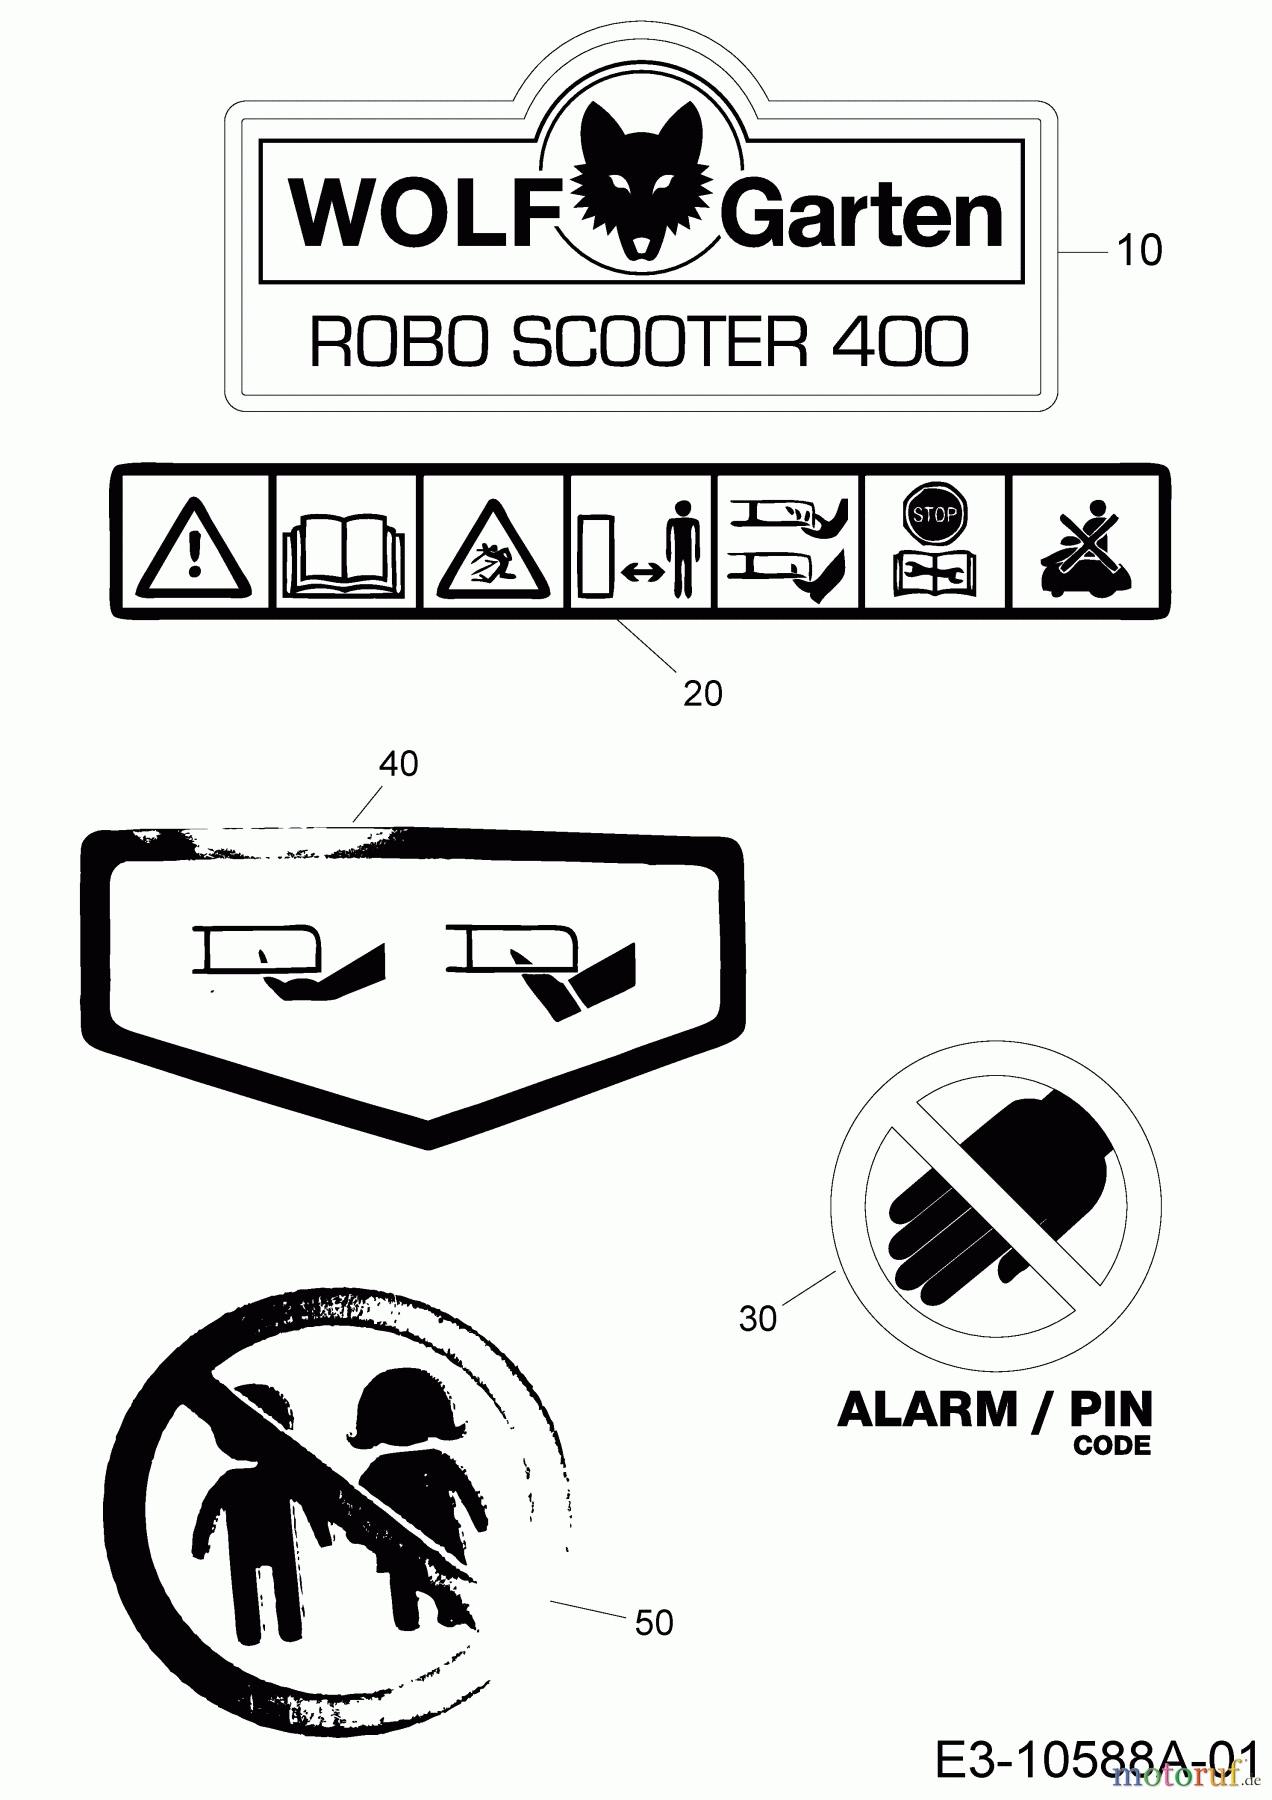  Wolf-Garten Mähroboter Robo Scooter 600 18AO06LF650  (2015) Aufkleber